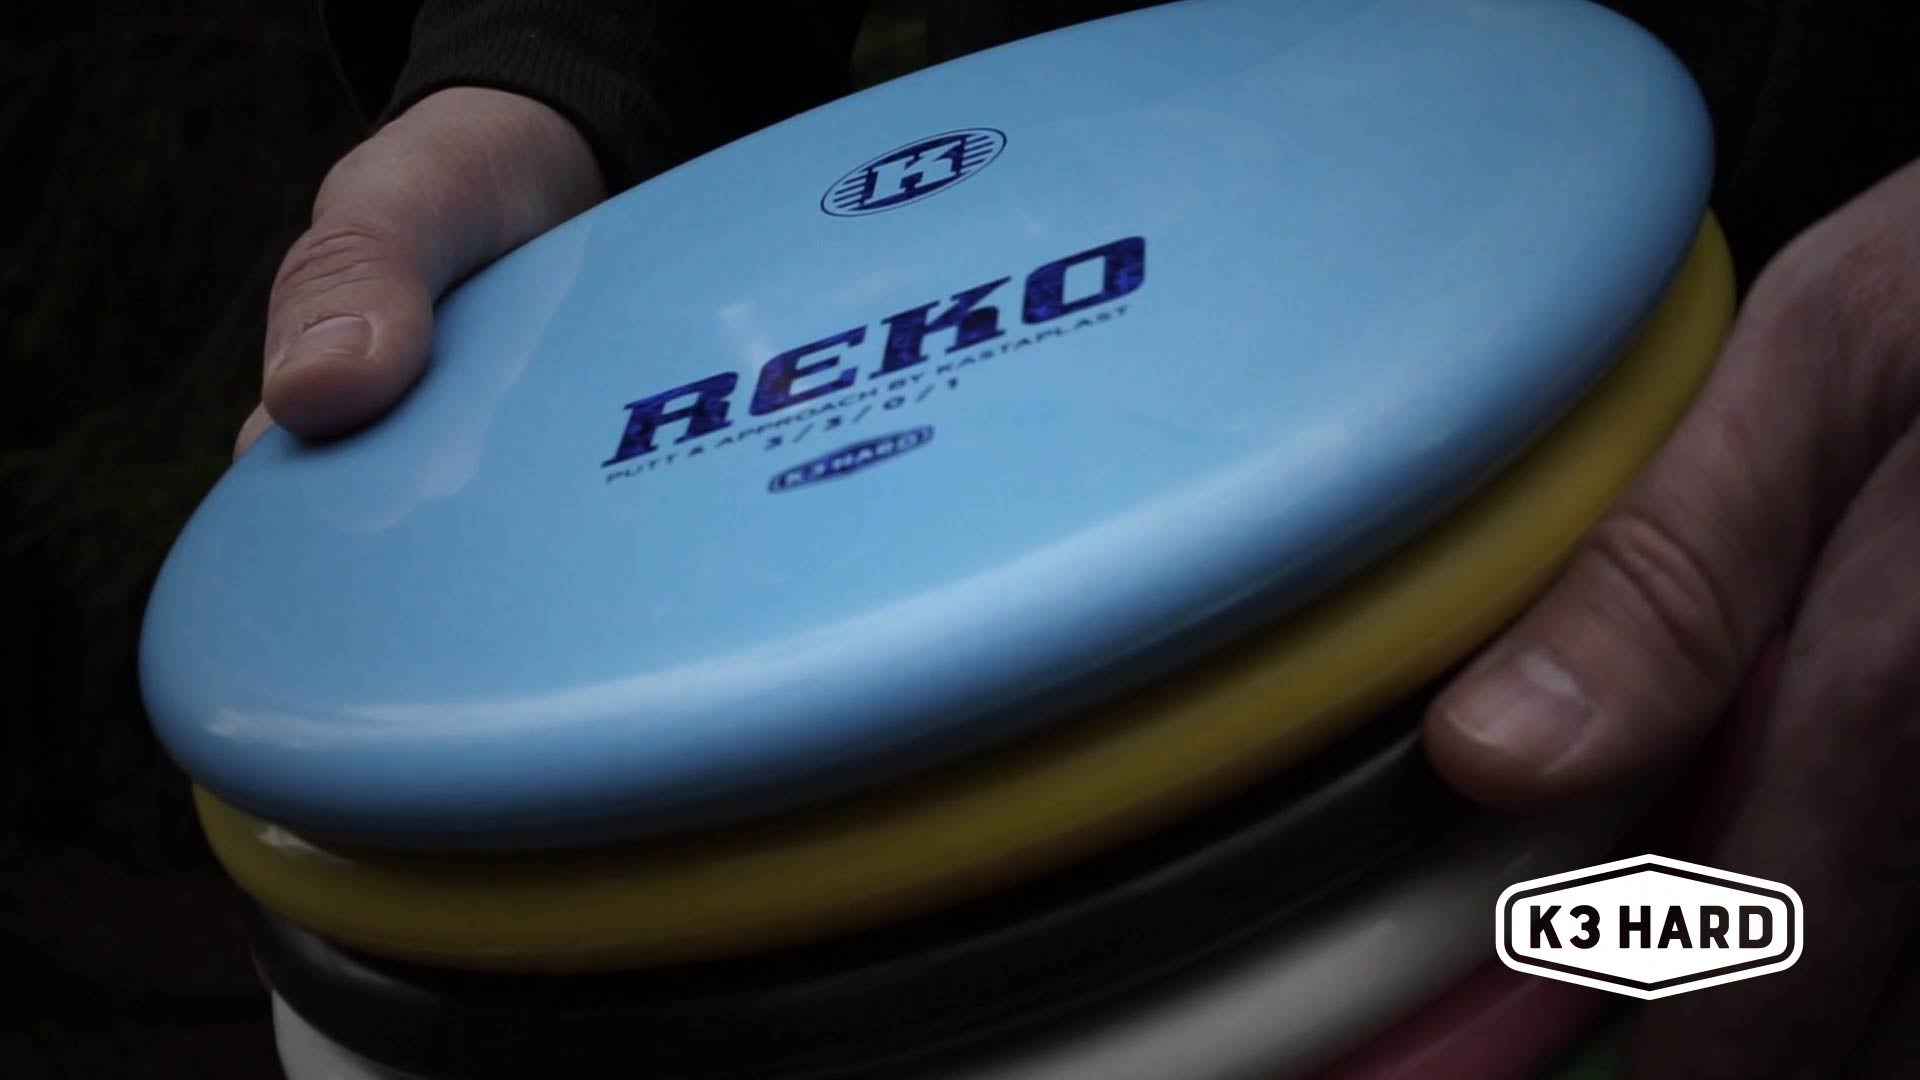 Load video: Reko K3 Hard.